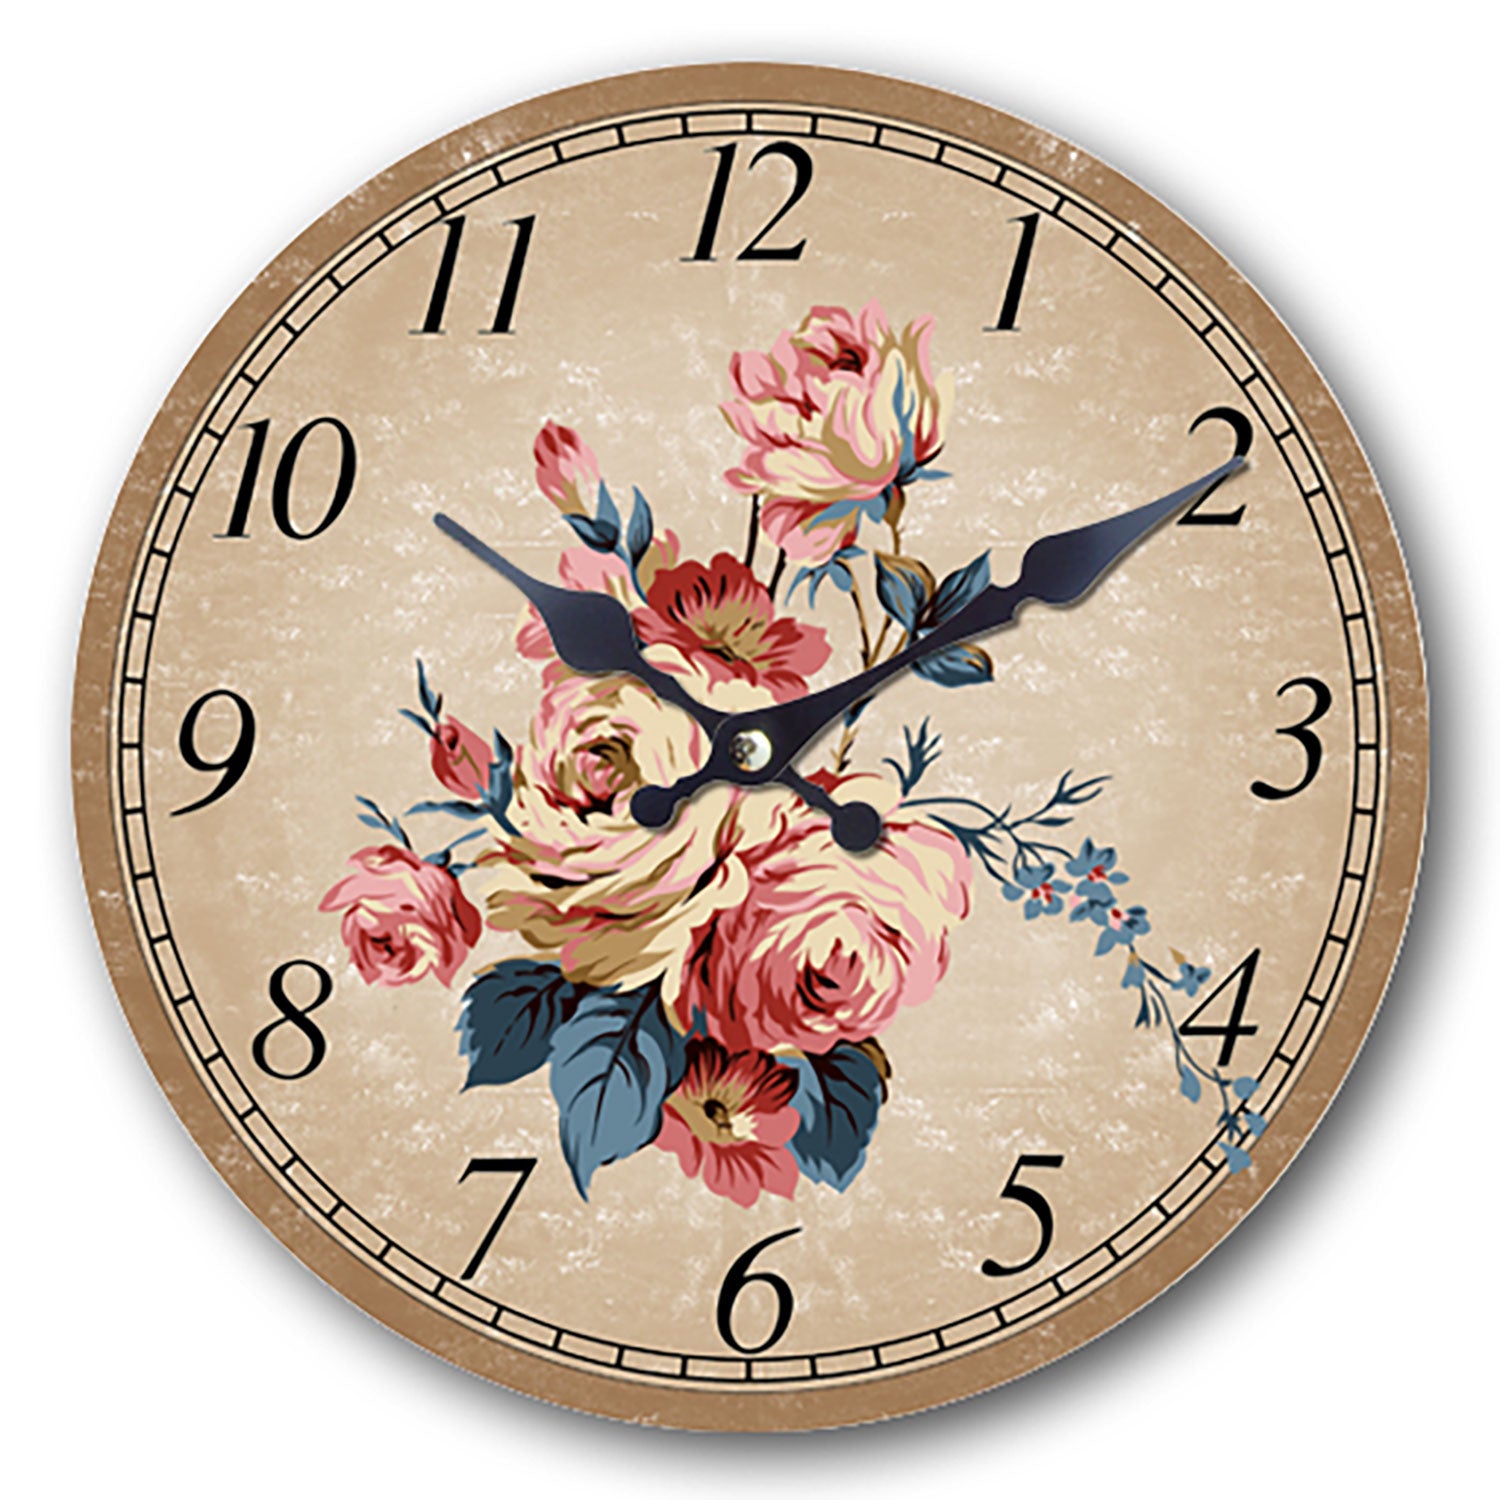 Orologio in legno da parete stile retrò Isabelle Rose floreale Shabby chic 5174